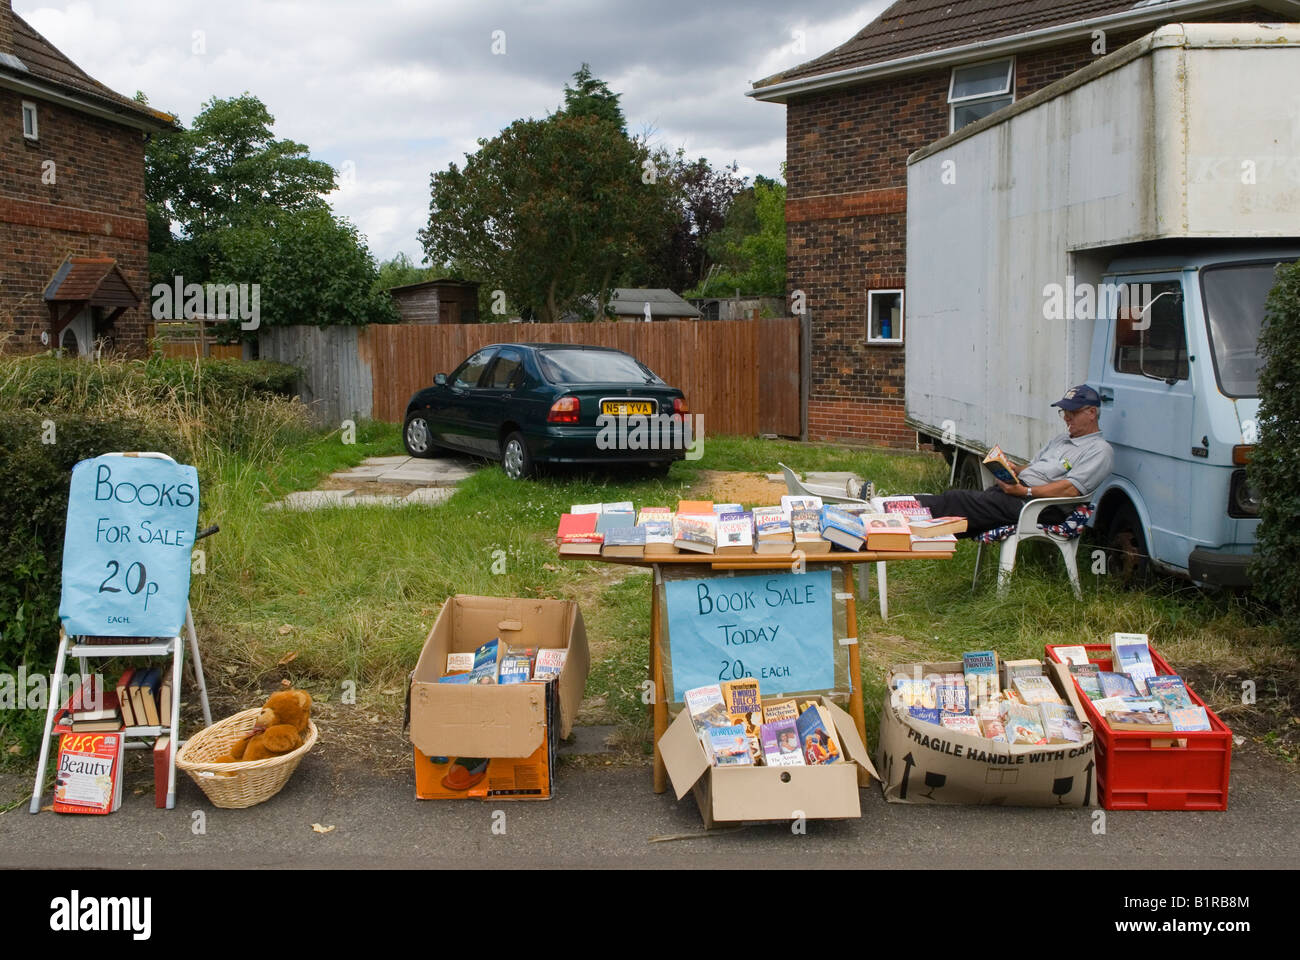 Umzug nach Hause, Garagenverkauf Rentnerpaar Clearing, Verkauf einige ihrer  Bücher billig Vorort London SW20 Sie ziehen nach Hause. UK HOMER SYKES  Stockfotografie - Alamy